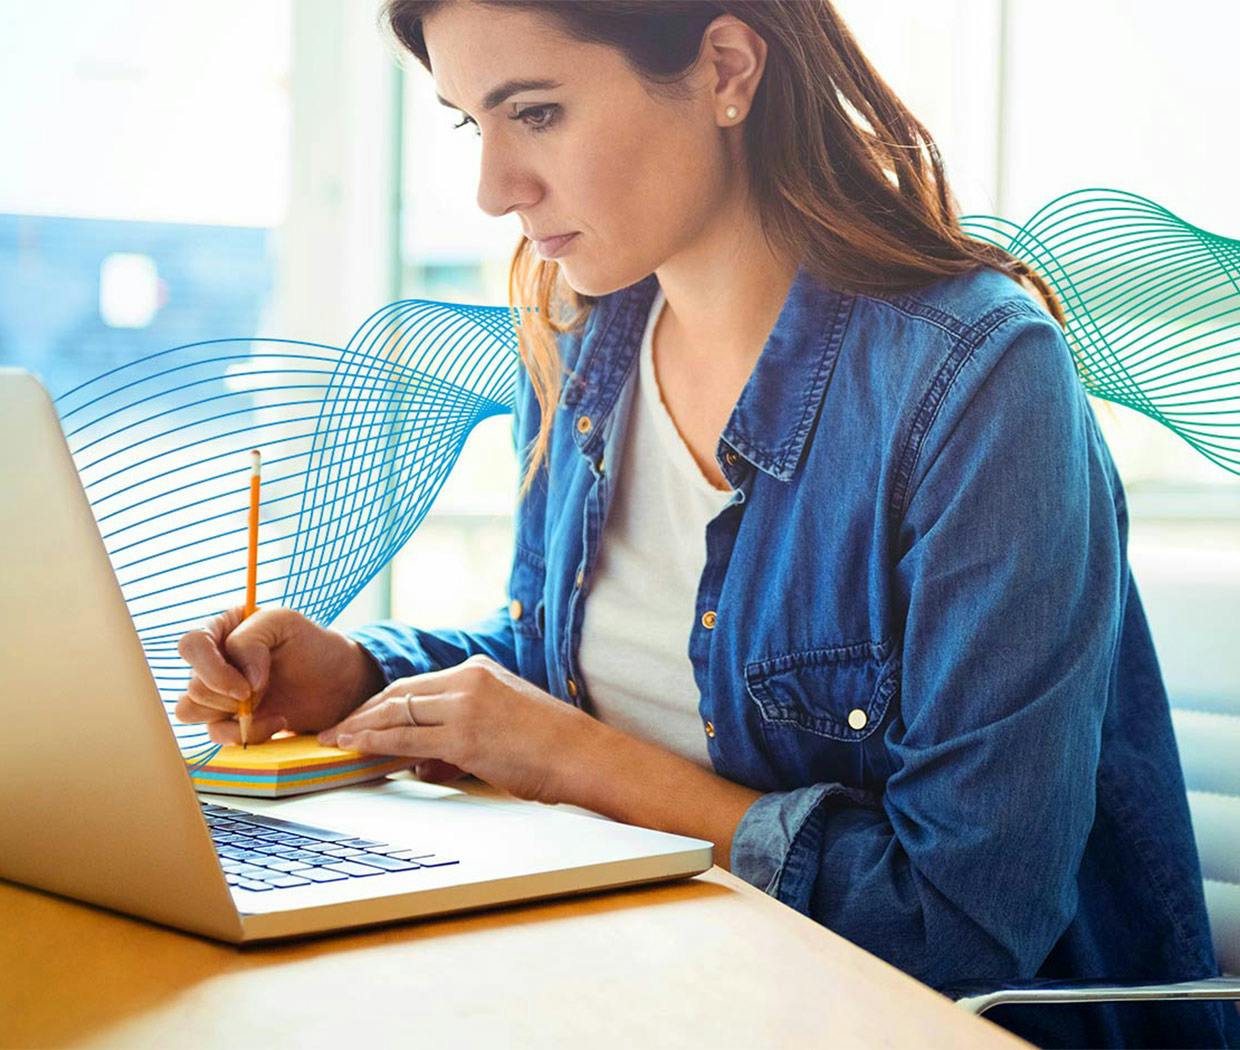 Színhely irodai környezetben, nő ül a laptopnál és jegyzetel